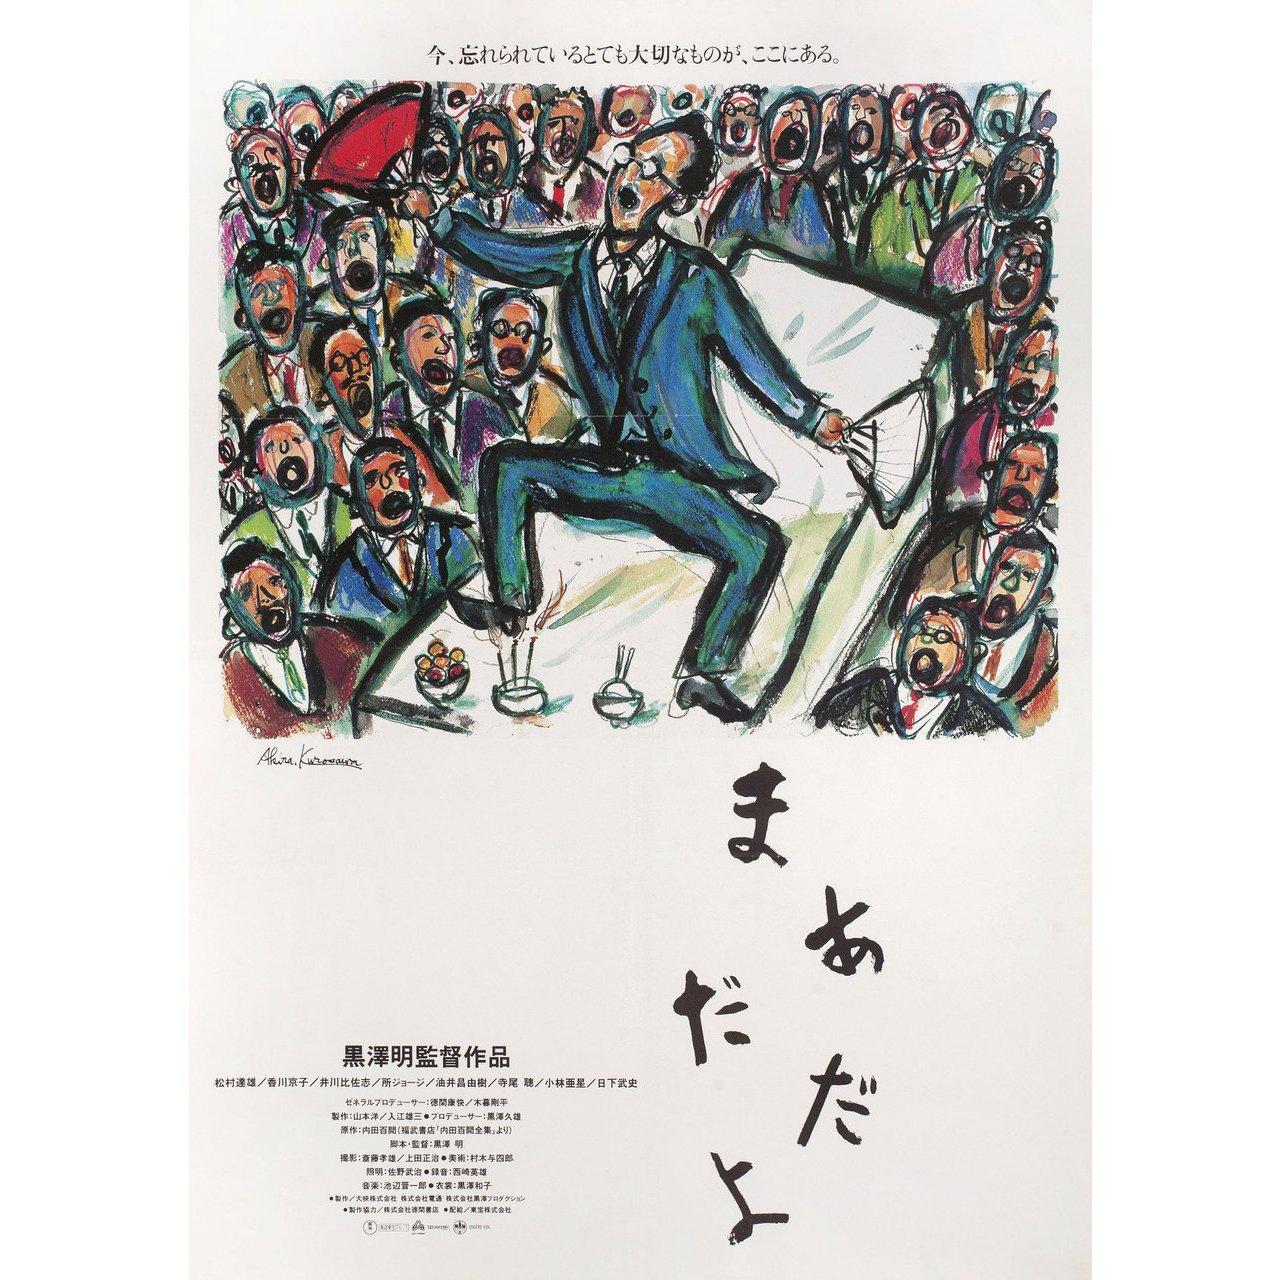 Original 1993 Japanese B2 poster by Akira Kurosawa for the film Madadayo directed by Akira Kurosawa with Tatsuo Matsumura / Kyoko Kagawa / Hisashi Igawa / Joji Tokoro. Fine condition, folded. Many original posters were issued folded or were